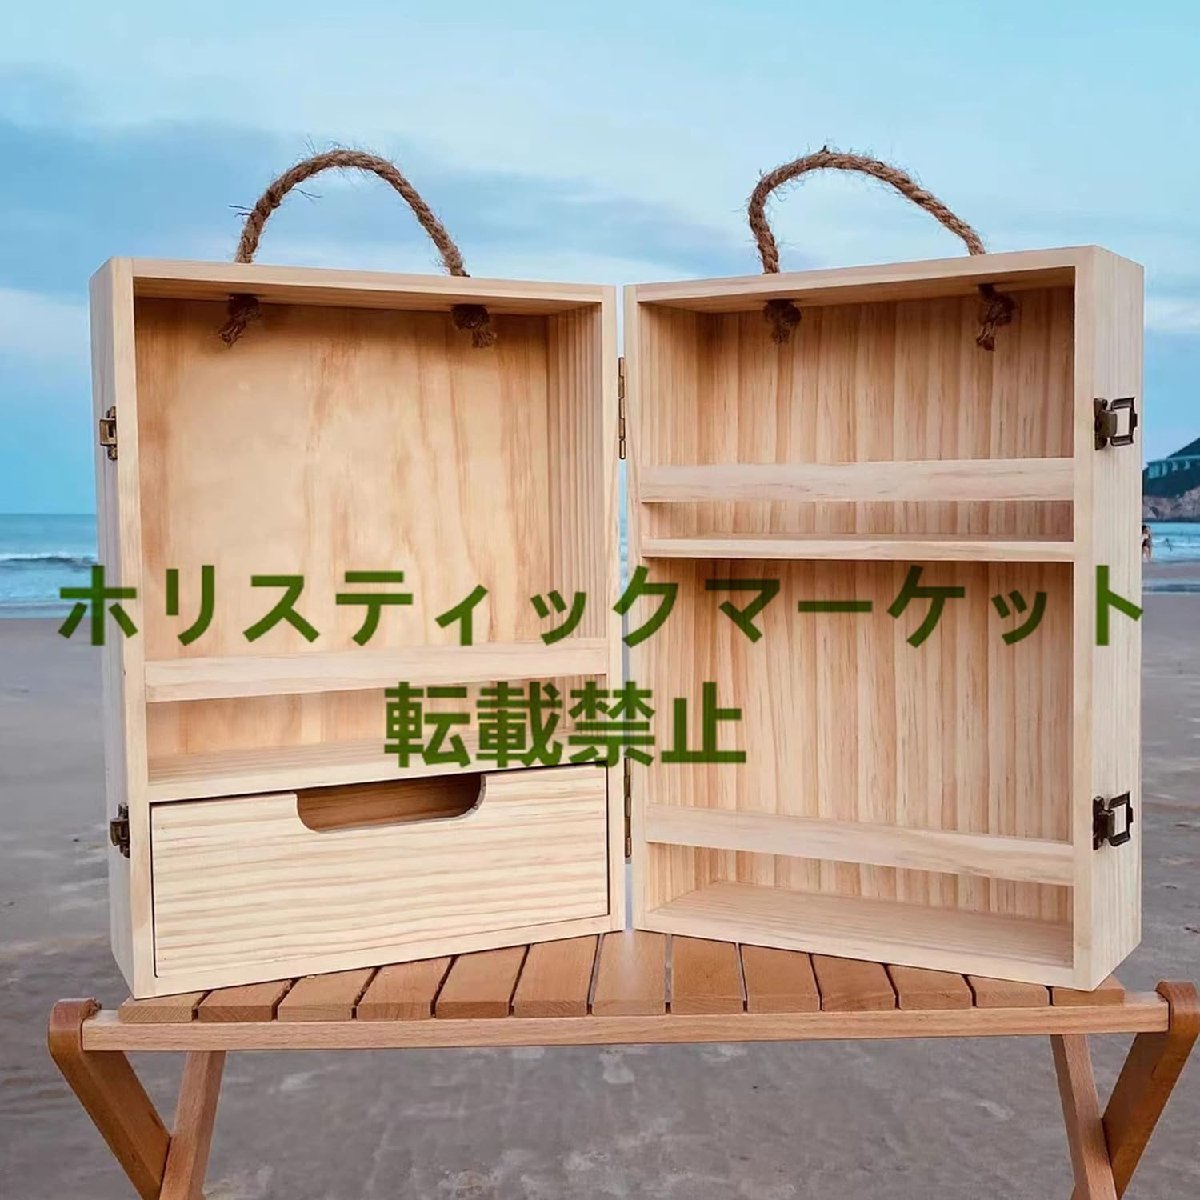 キャンプ用品 木製スパイスボックス おしゃれ 調味料入れに 収納 手軽に持ち運べ アウトドア 茶色_画像3